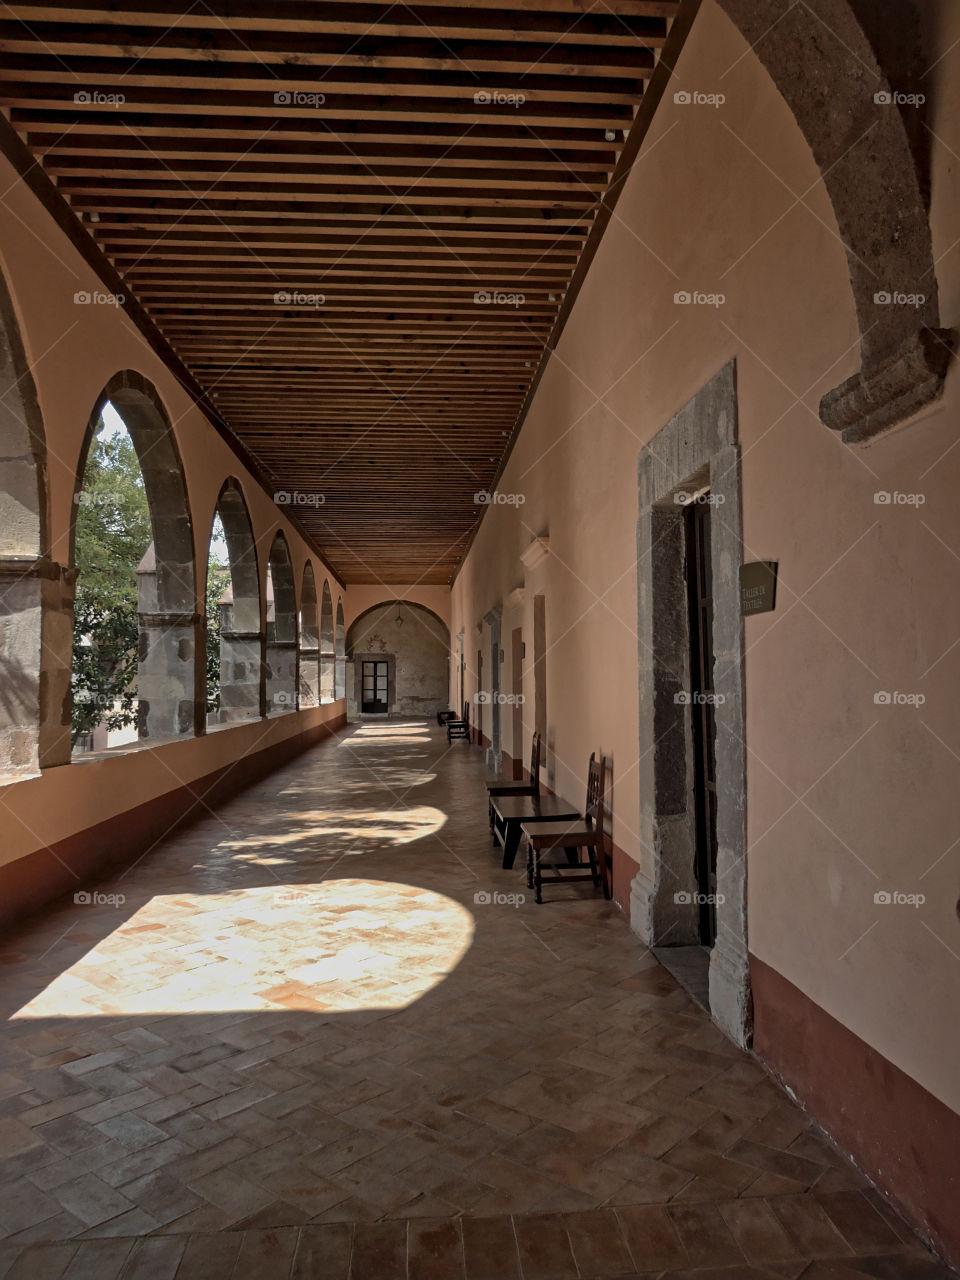 Ex-convent of Las Monjas known today as an art school "Bellas Artes - Centro Cultural el Nigromante" in San Miguel de Allende, Guanajuato, Mexico